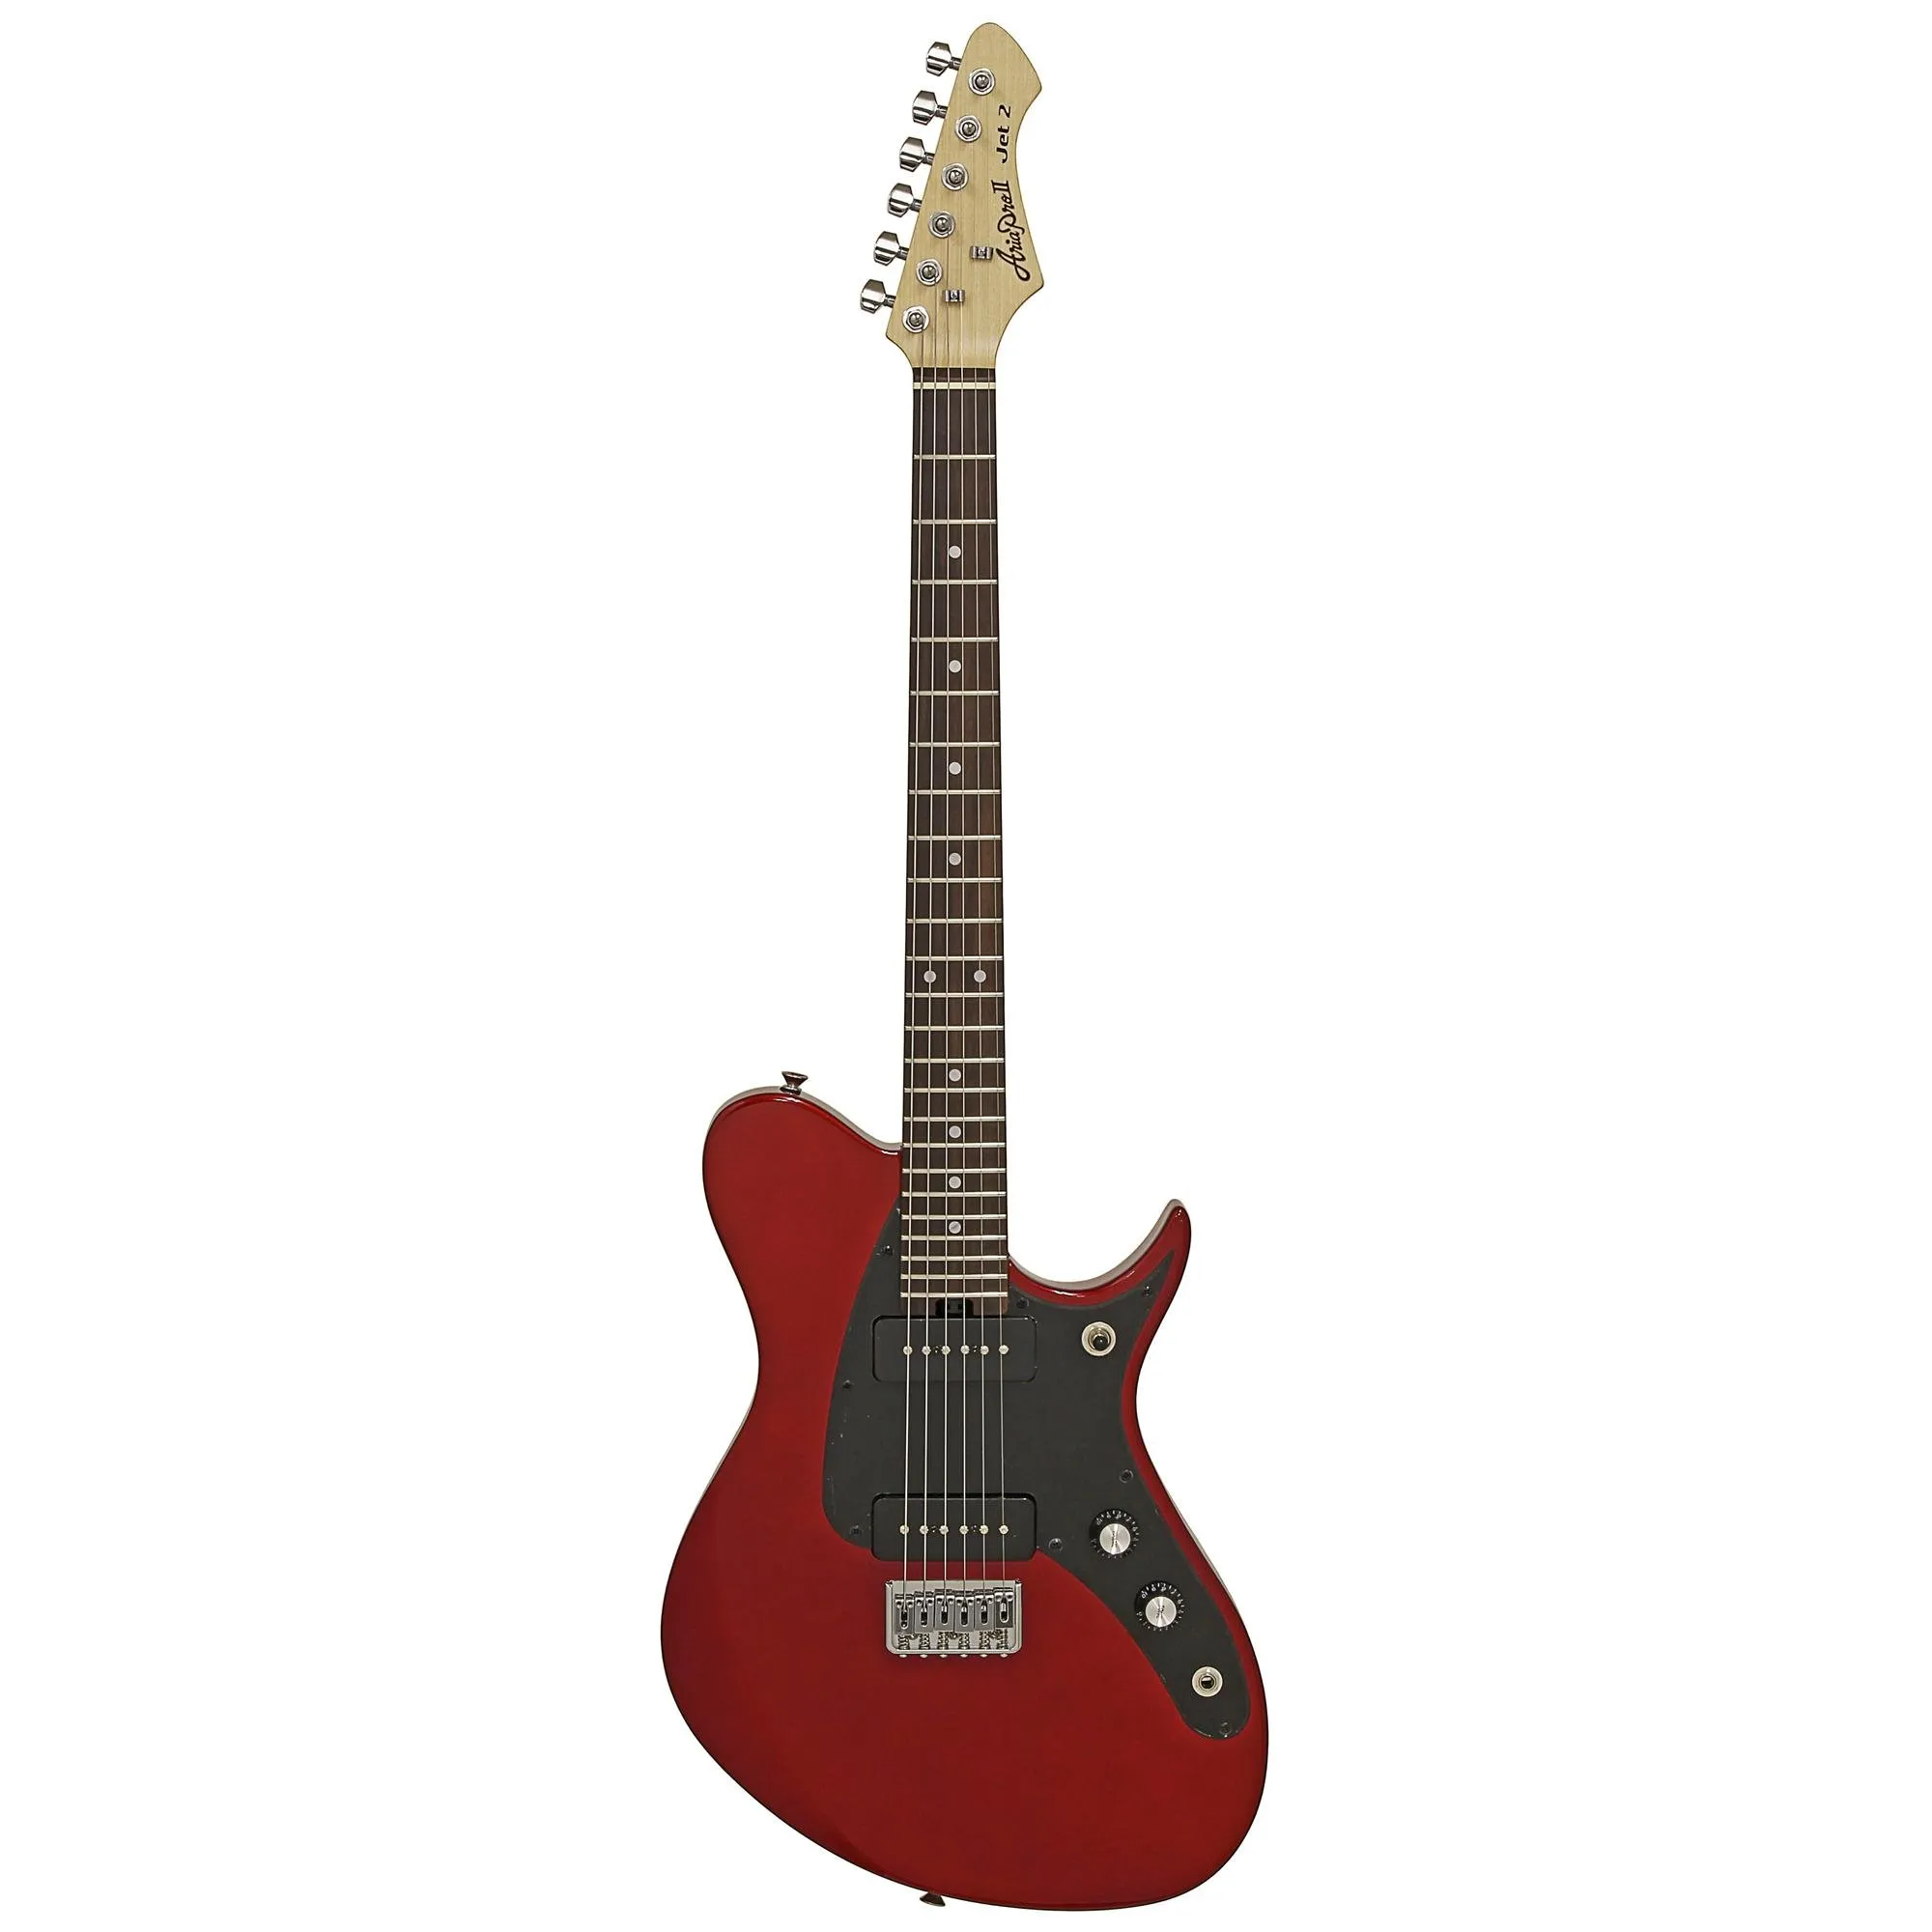 Guitarra Aria J-2 Candy Apple Red por 2.151,00 à vista no boleto/pix ou parcele em até 12x sem juros. Compre na loja Mundomax!